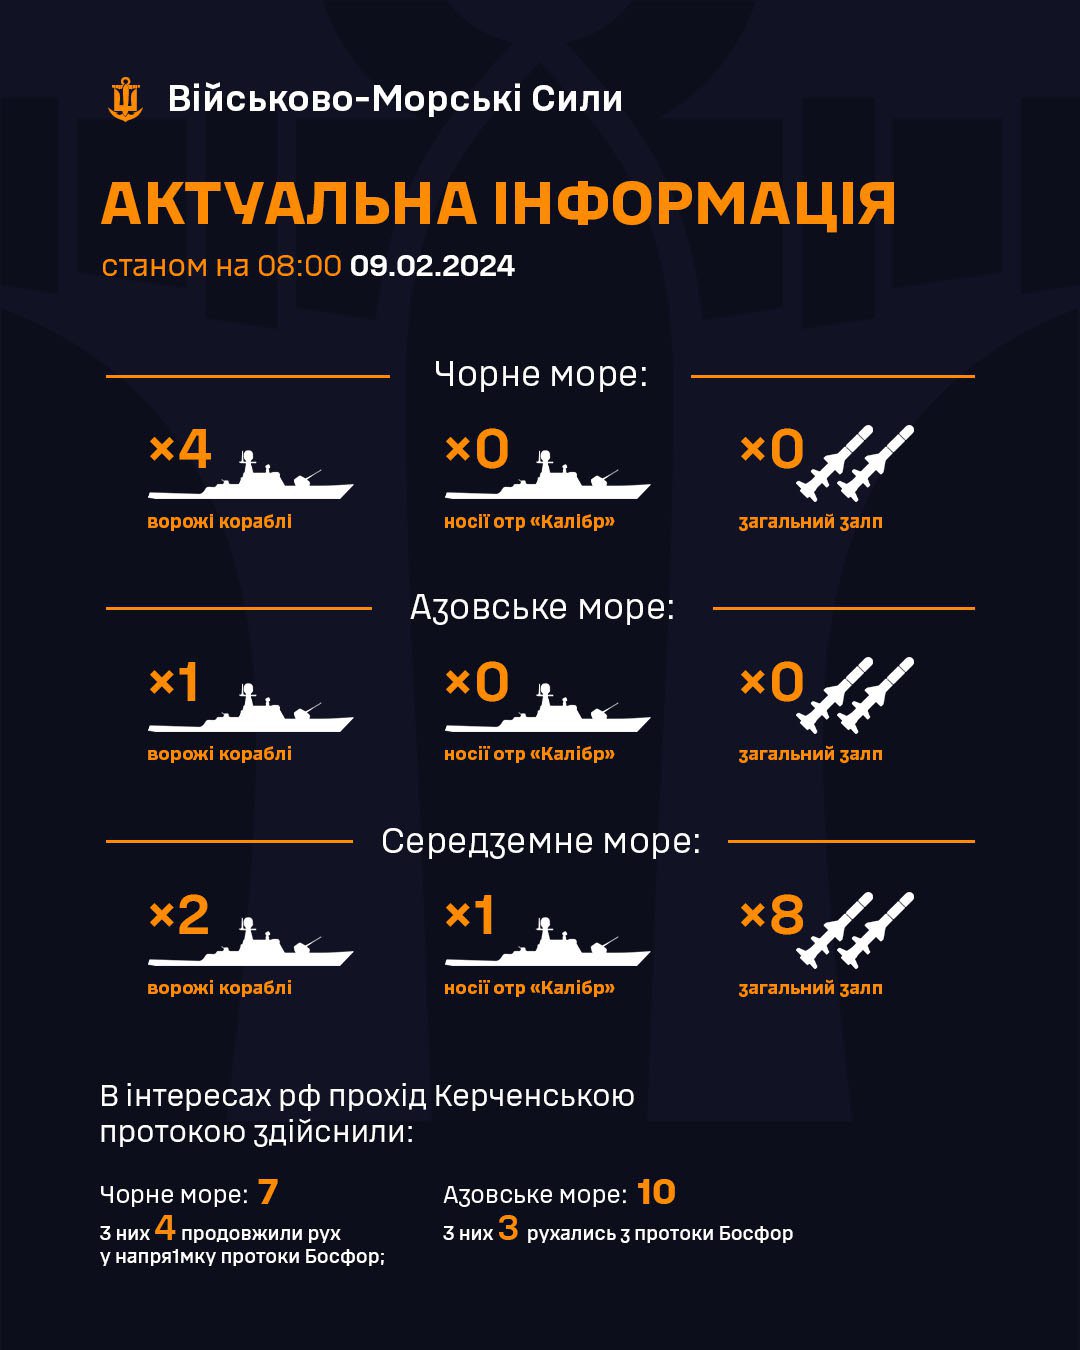 Всього Росія тримає у морях 7 кораблів